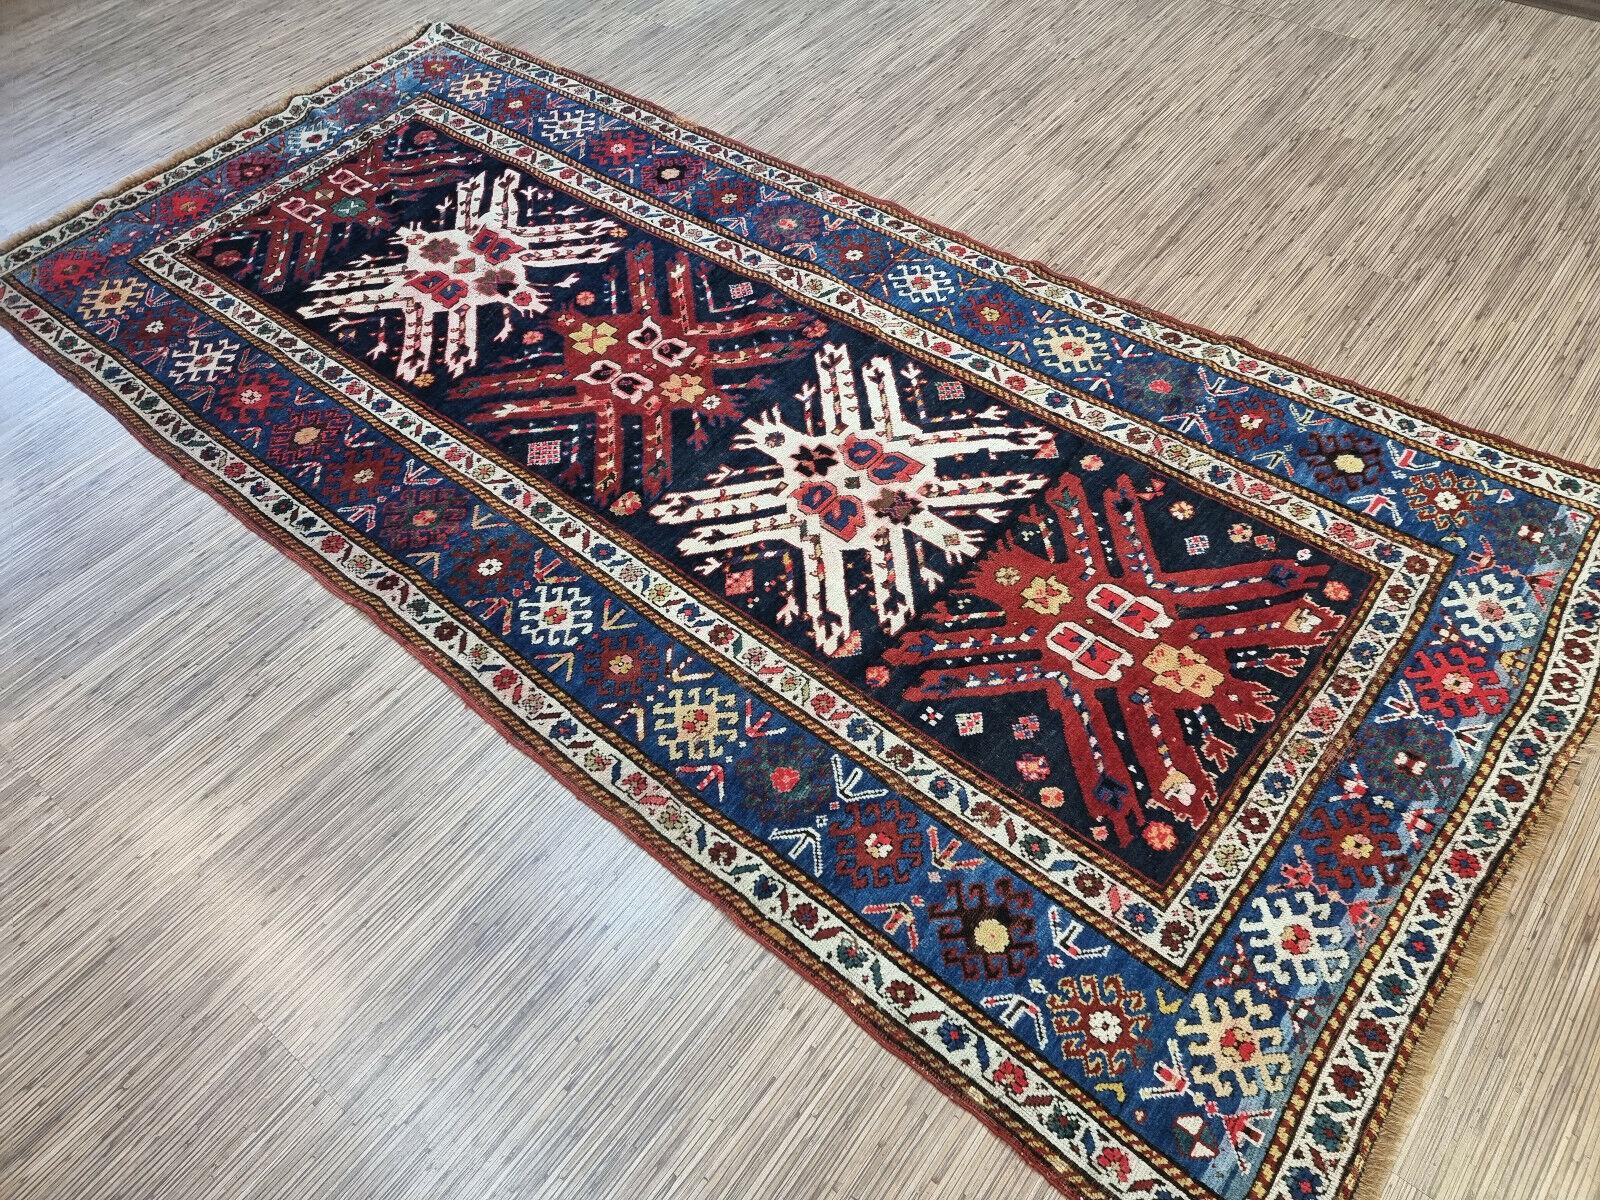 Holen Sie sich mit unserem handgefertigten antiken kaukasischen Kazak-Teppich ein Stück Geschichte nach Hause. Dieser atemberaubende Teppich wurde um 1900 von den Kasachen, einem Nomadenstamm aus der Kaukasusregion, gewebt. Der Teppich misst 4,1' x